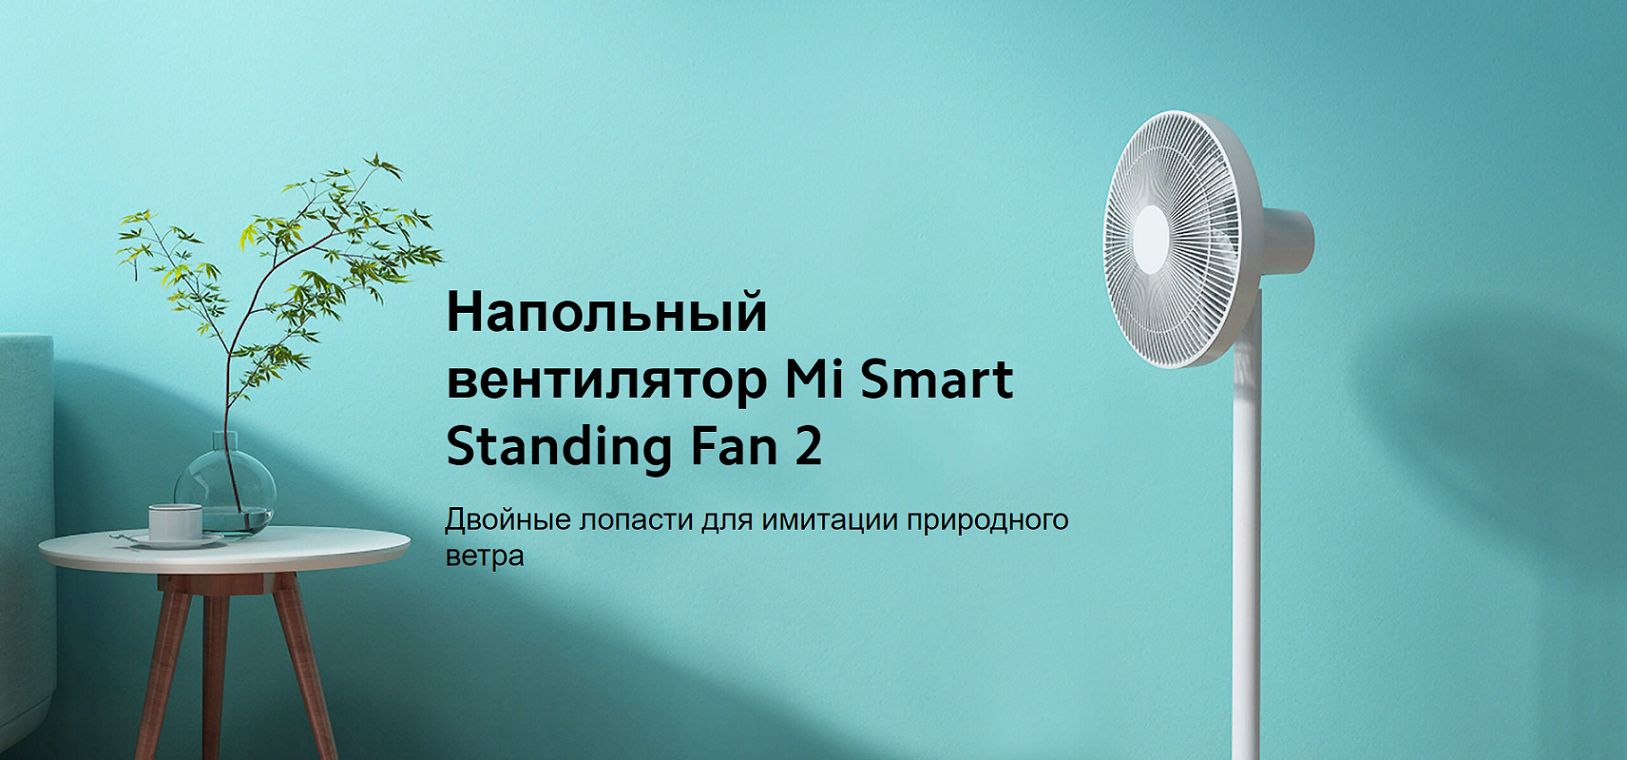 Xiaomi standing fan. Напольный вентилятор mi Smart standing Fan 2. Xiaomi mi Smart standing Fan 2 eu bplds02dm (bhr4828gl). Напольный вентилятор Xiaomi mi Smart standing Fan 2 Lite, белый. Напольный вентилятор Xiaomi mi Smart standing Fan 2 eu bplds02dm (bhr4828gl) Rus.